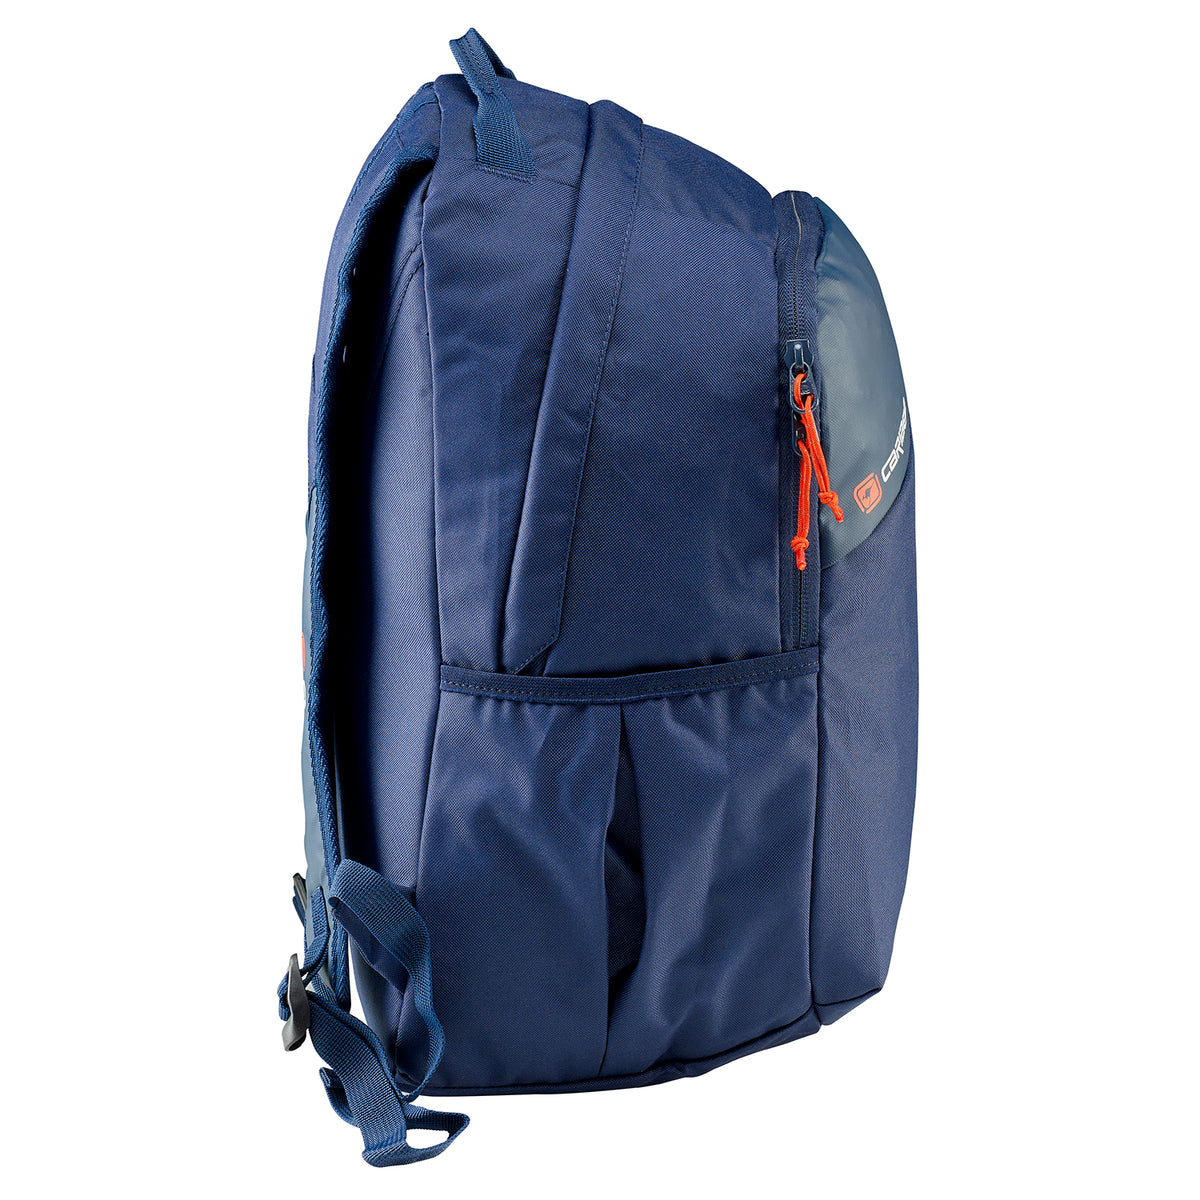 Caribee - Sierra 20lt Sports backpack - Navy/Red-3